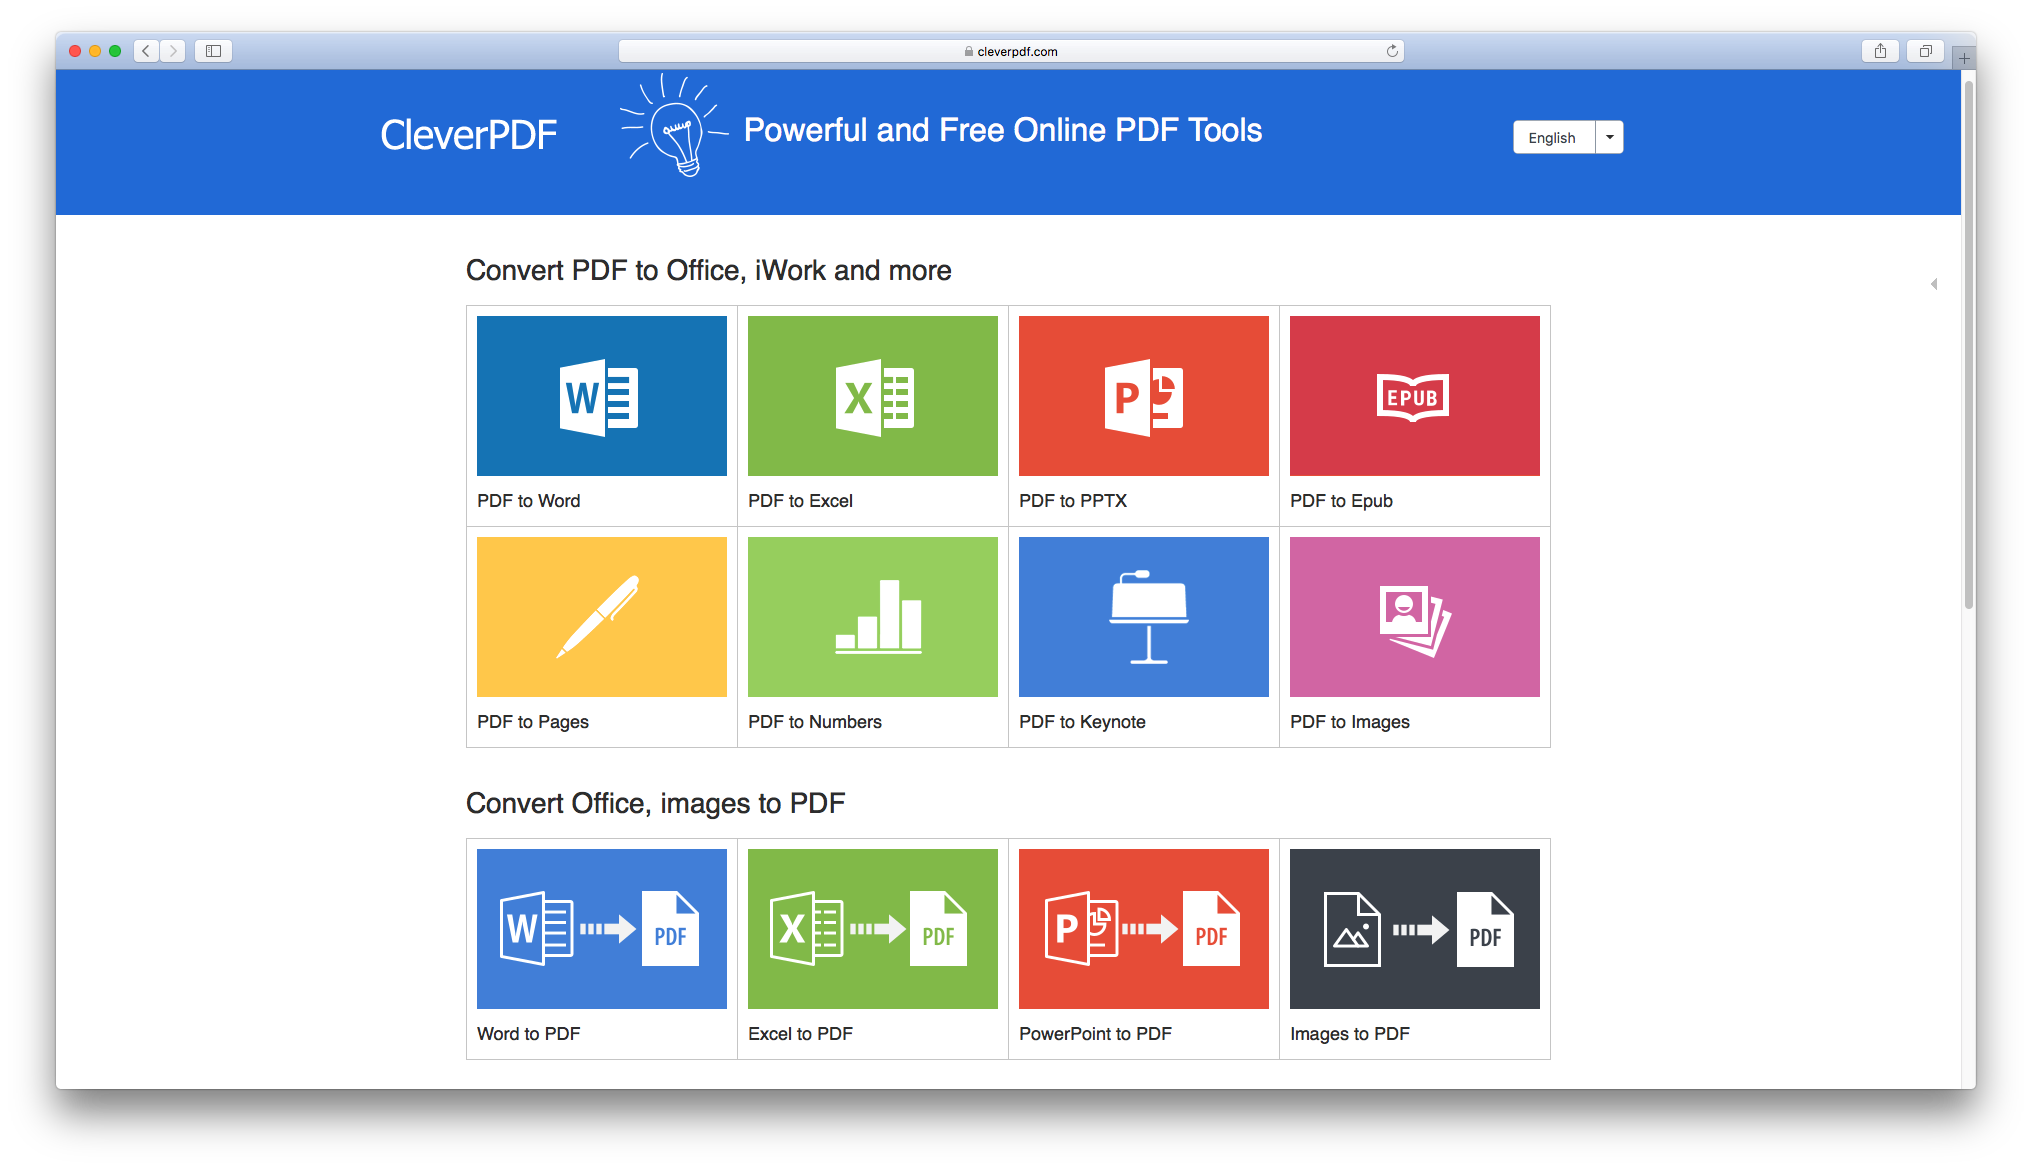 CleverPDF PDF conversion features